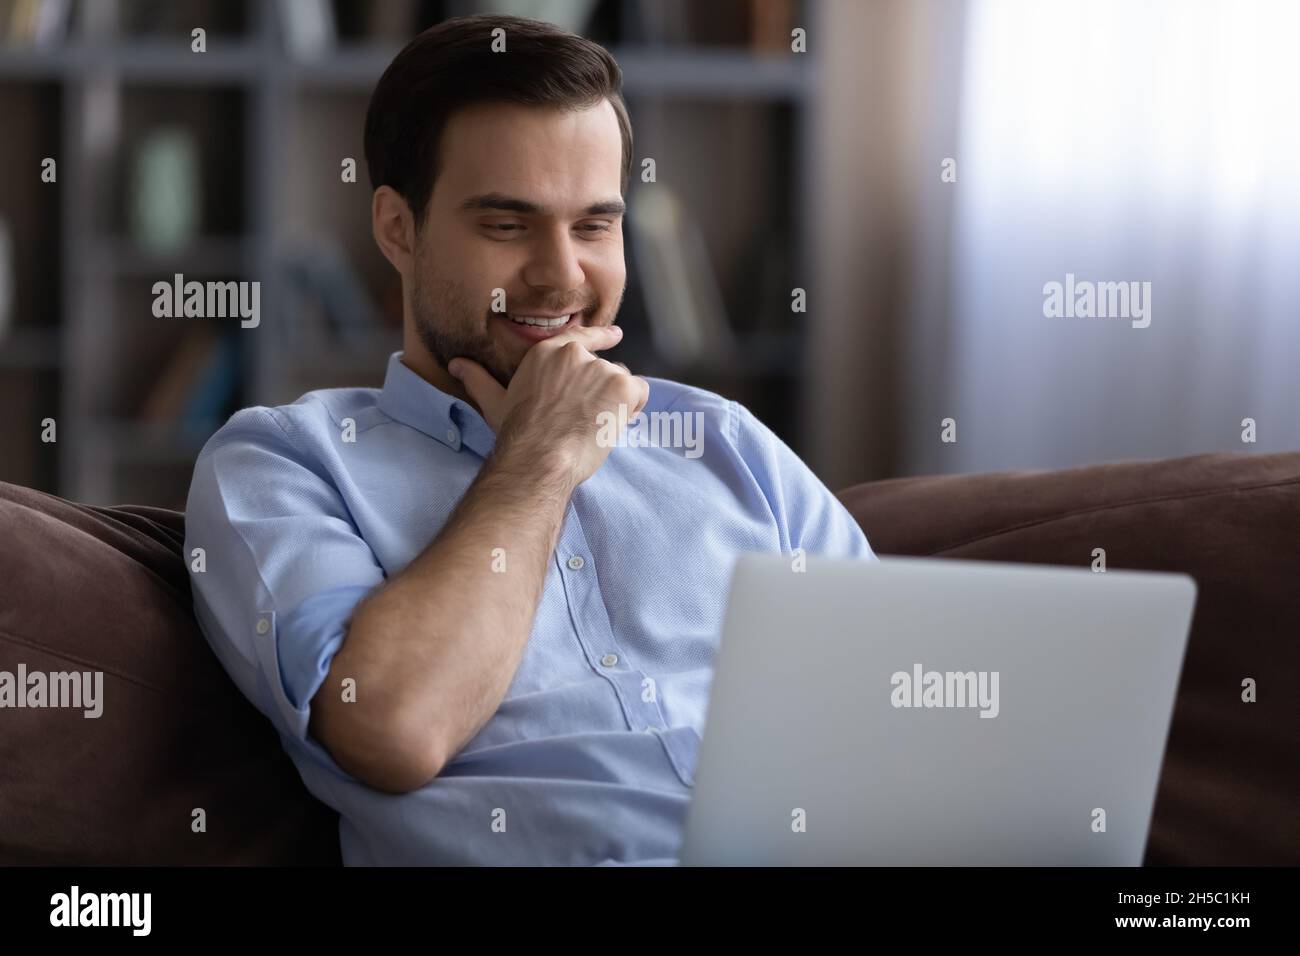 Jeune homme souriant utilisant un ordinateur, se reposant sur un canapé. Banque D'Images